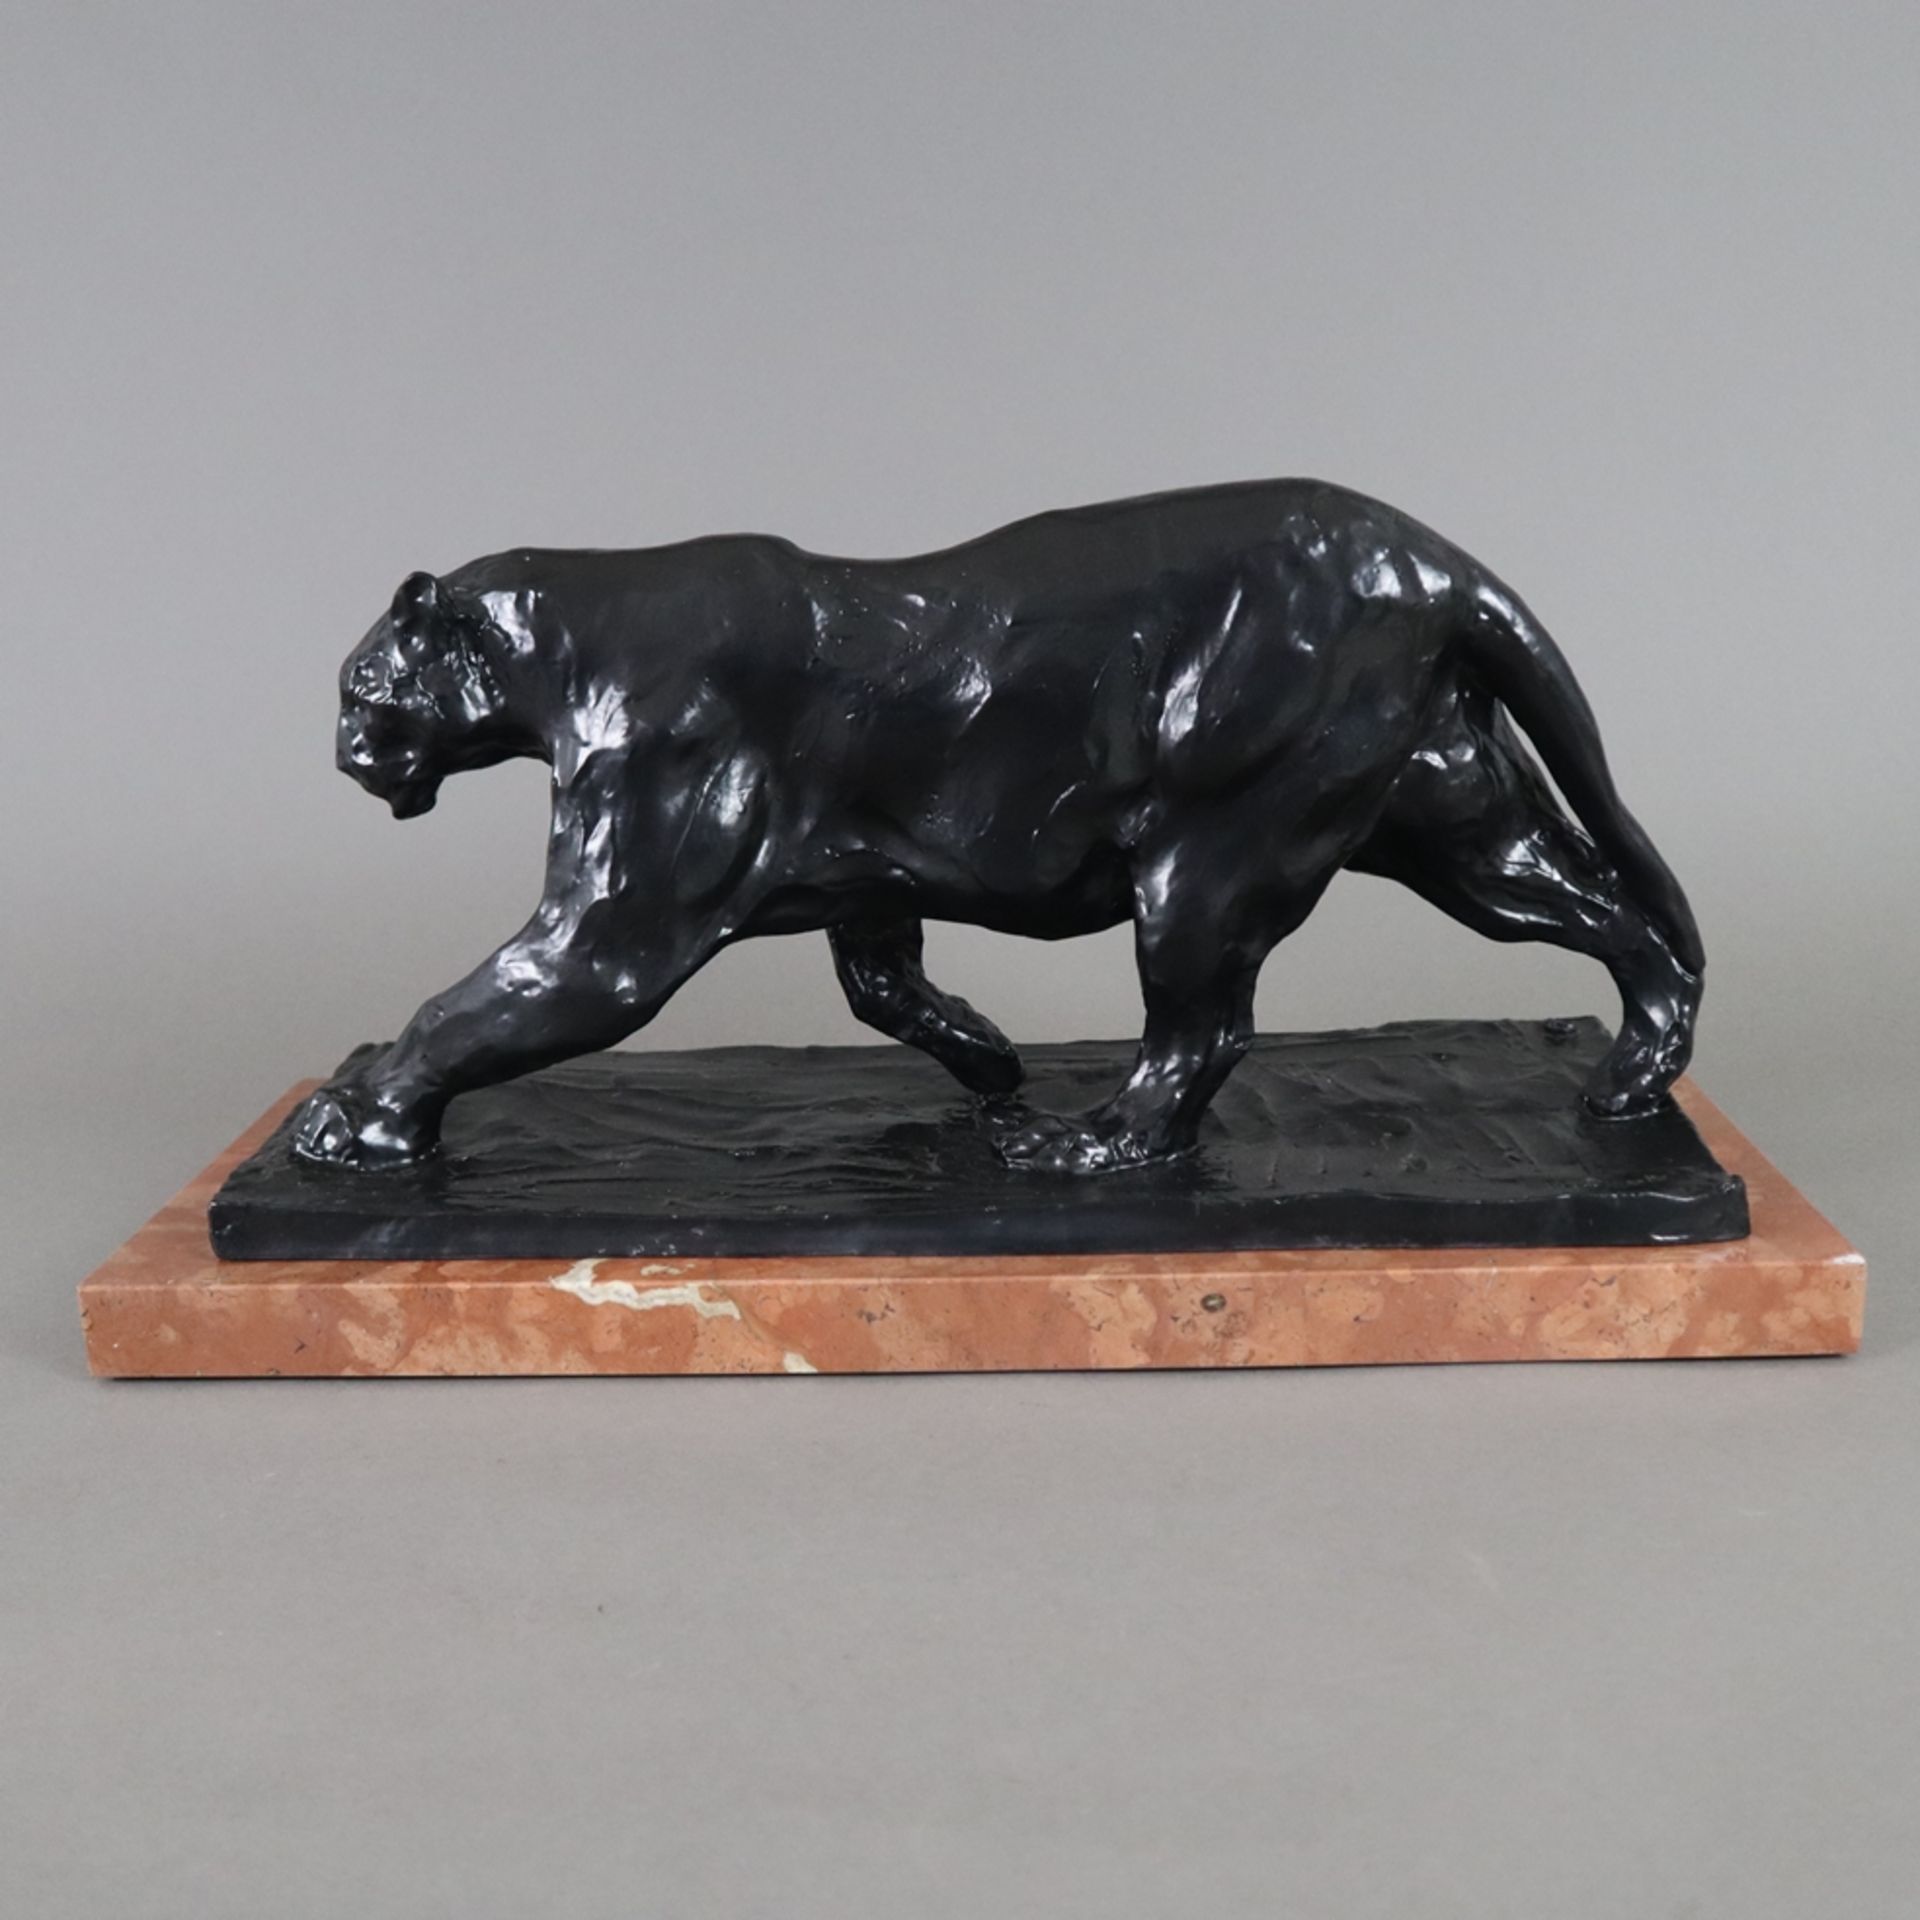 Bugatti, Rembrandt (1884 Mailand - Paris 1916, nach) - "Panthère marchant" (schreitender Panther),